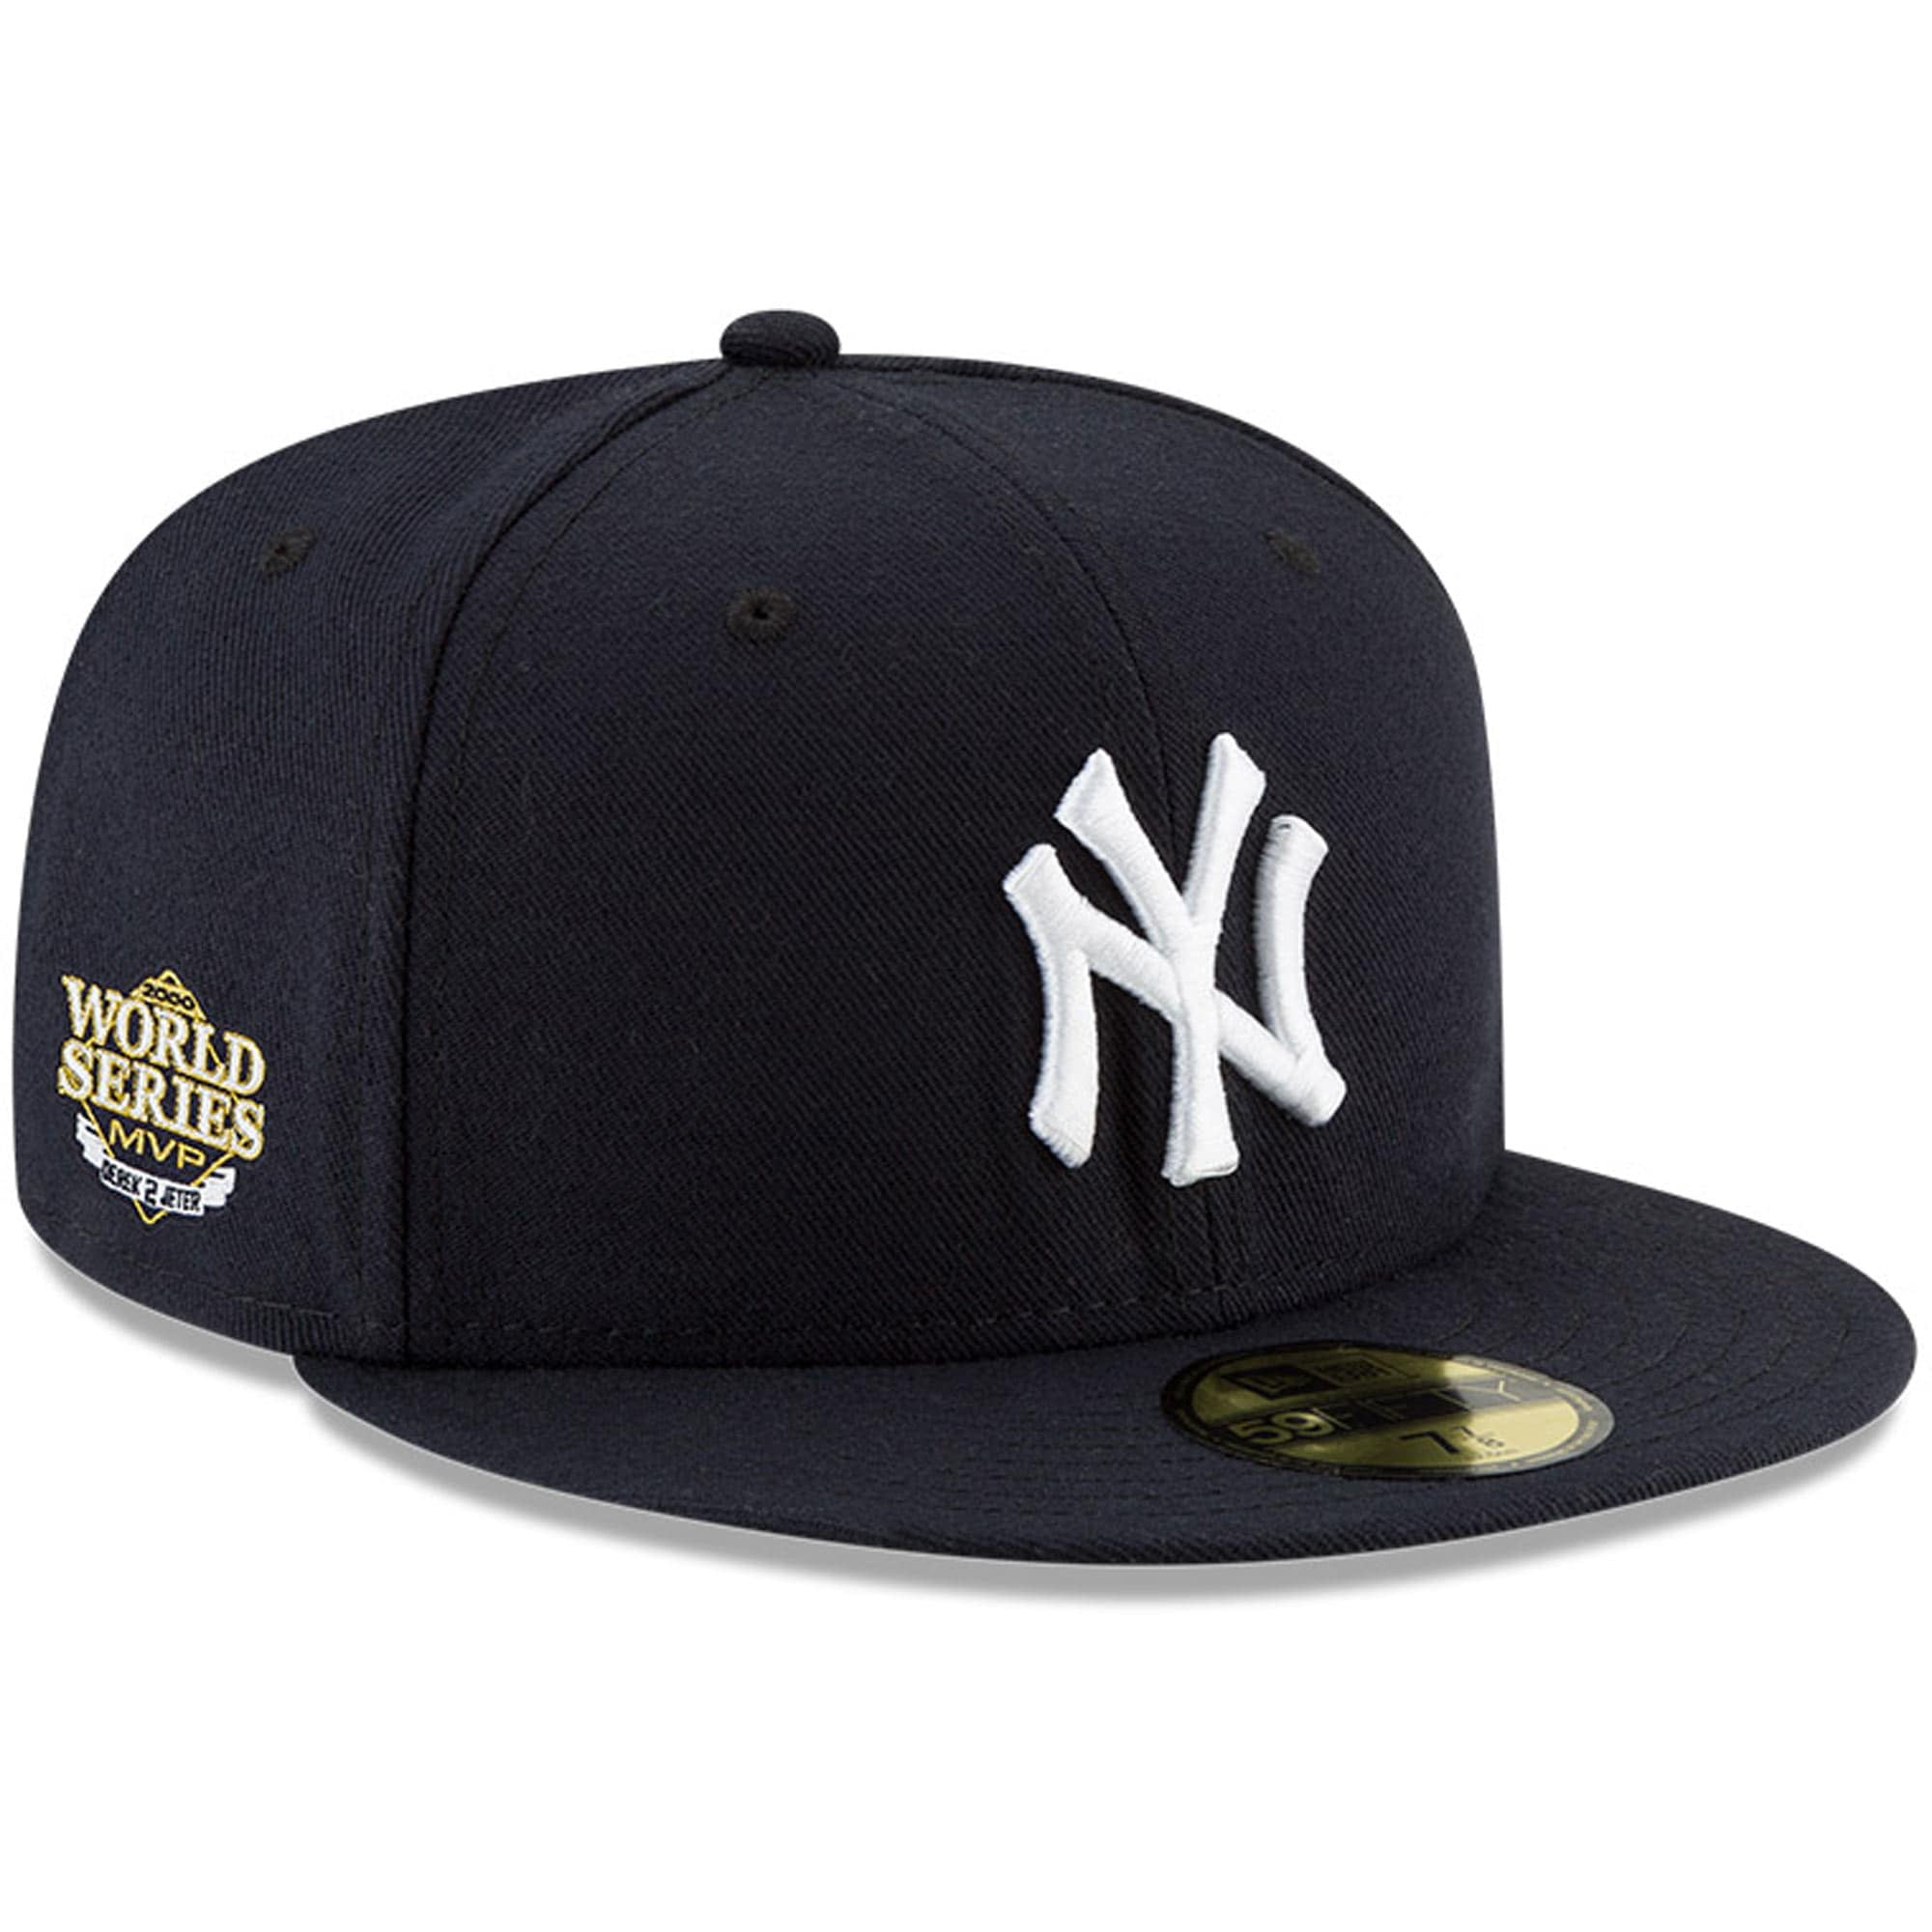 New Era 59Fifty Cap New York Yankees schwarz khaki 